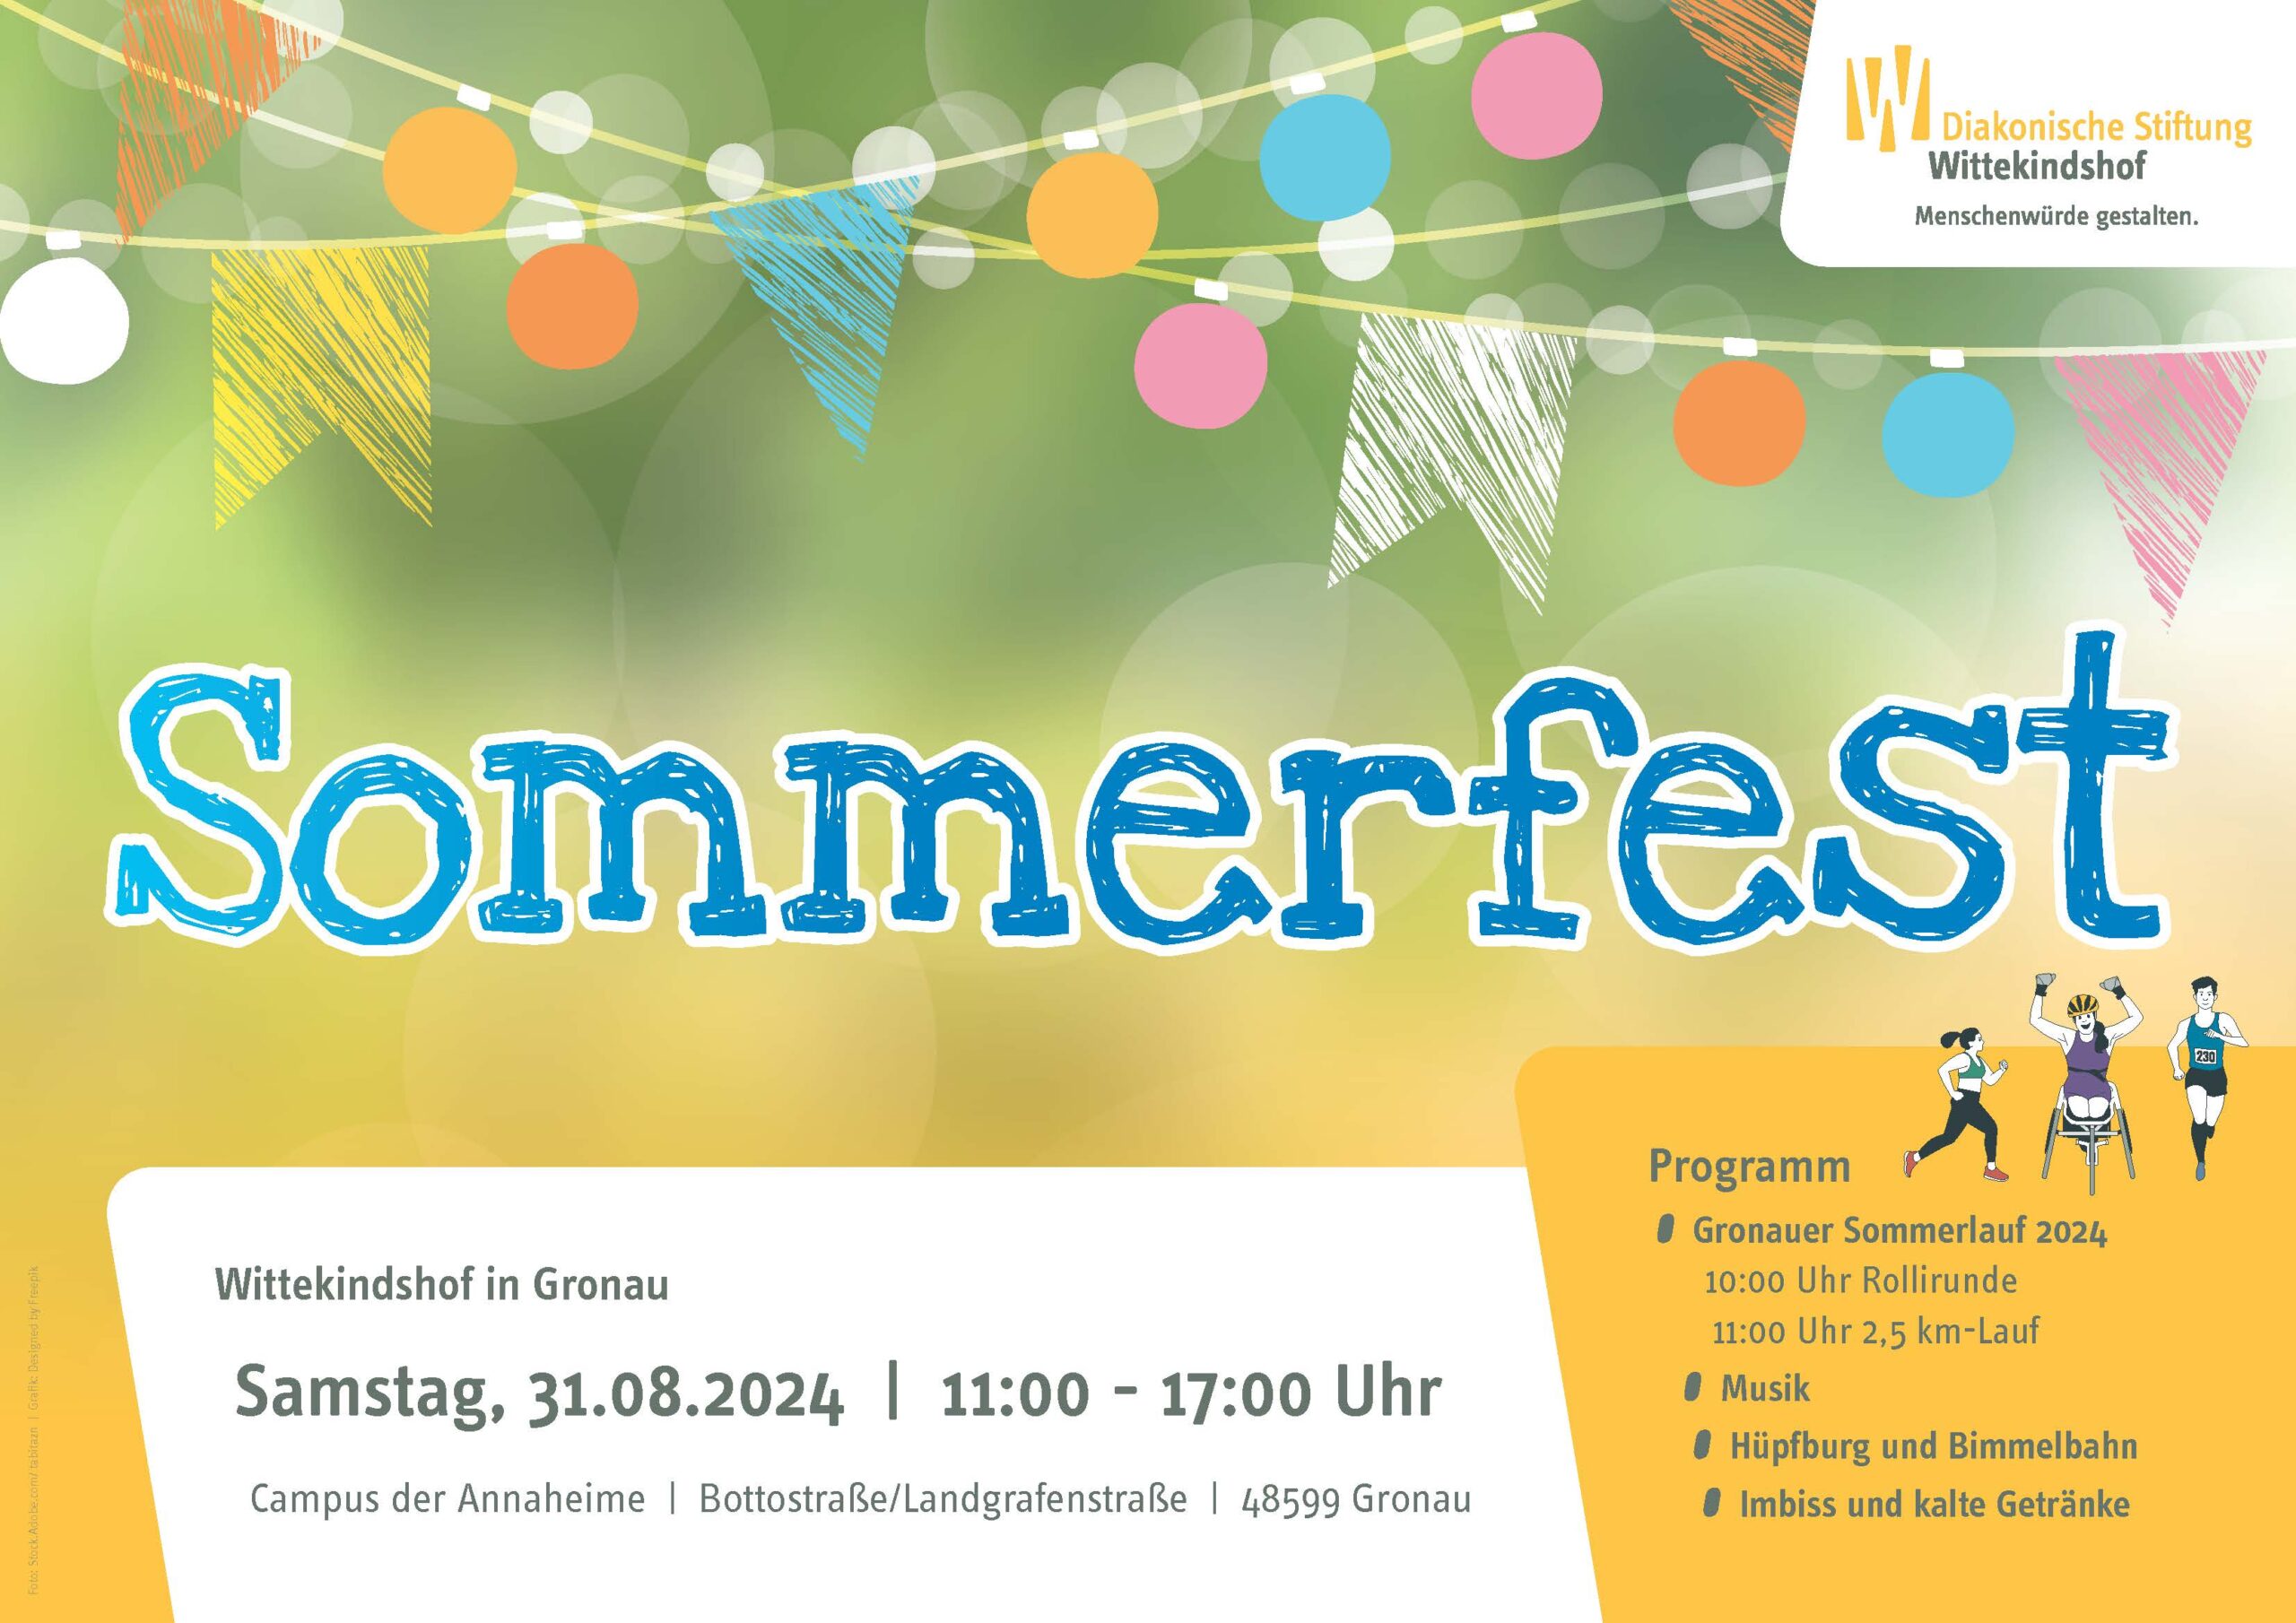 Sommerfest & Sommerlauf Wittekindshof in Gronau am 31.8.24 von 11h-17h